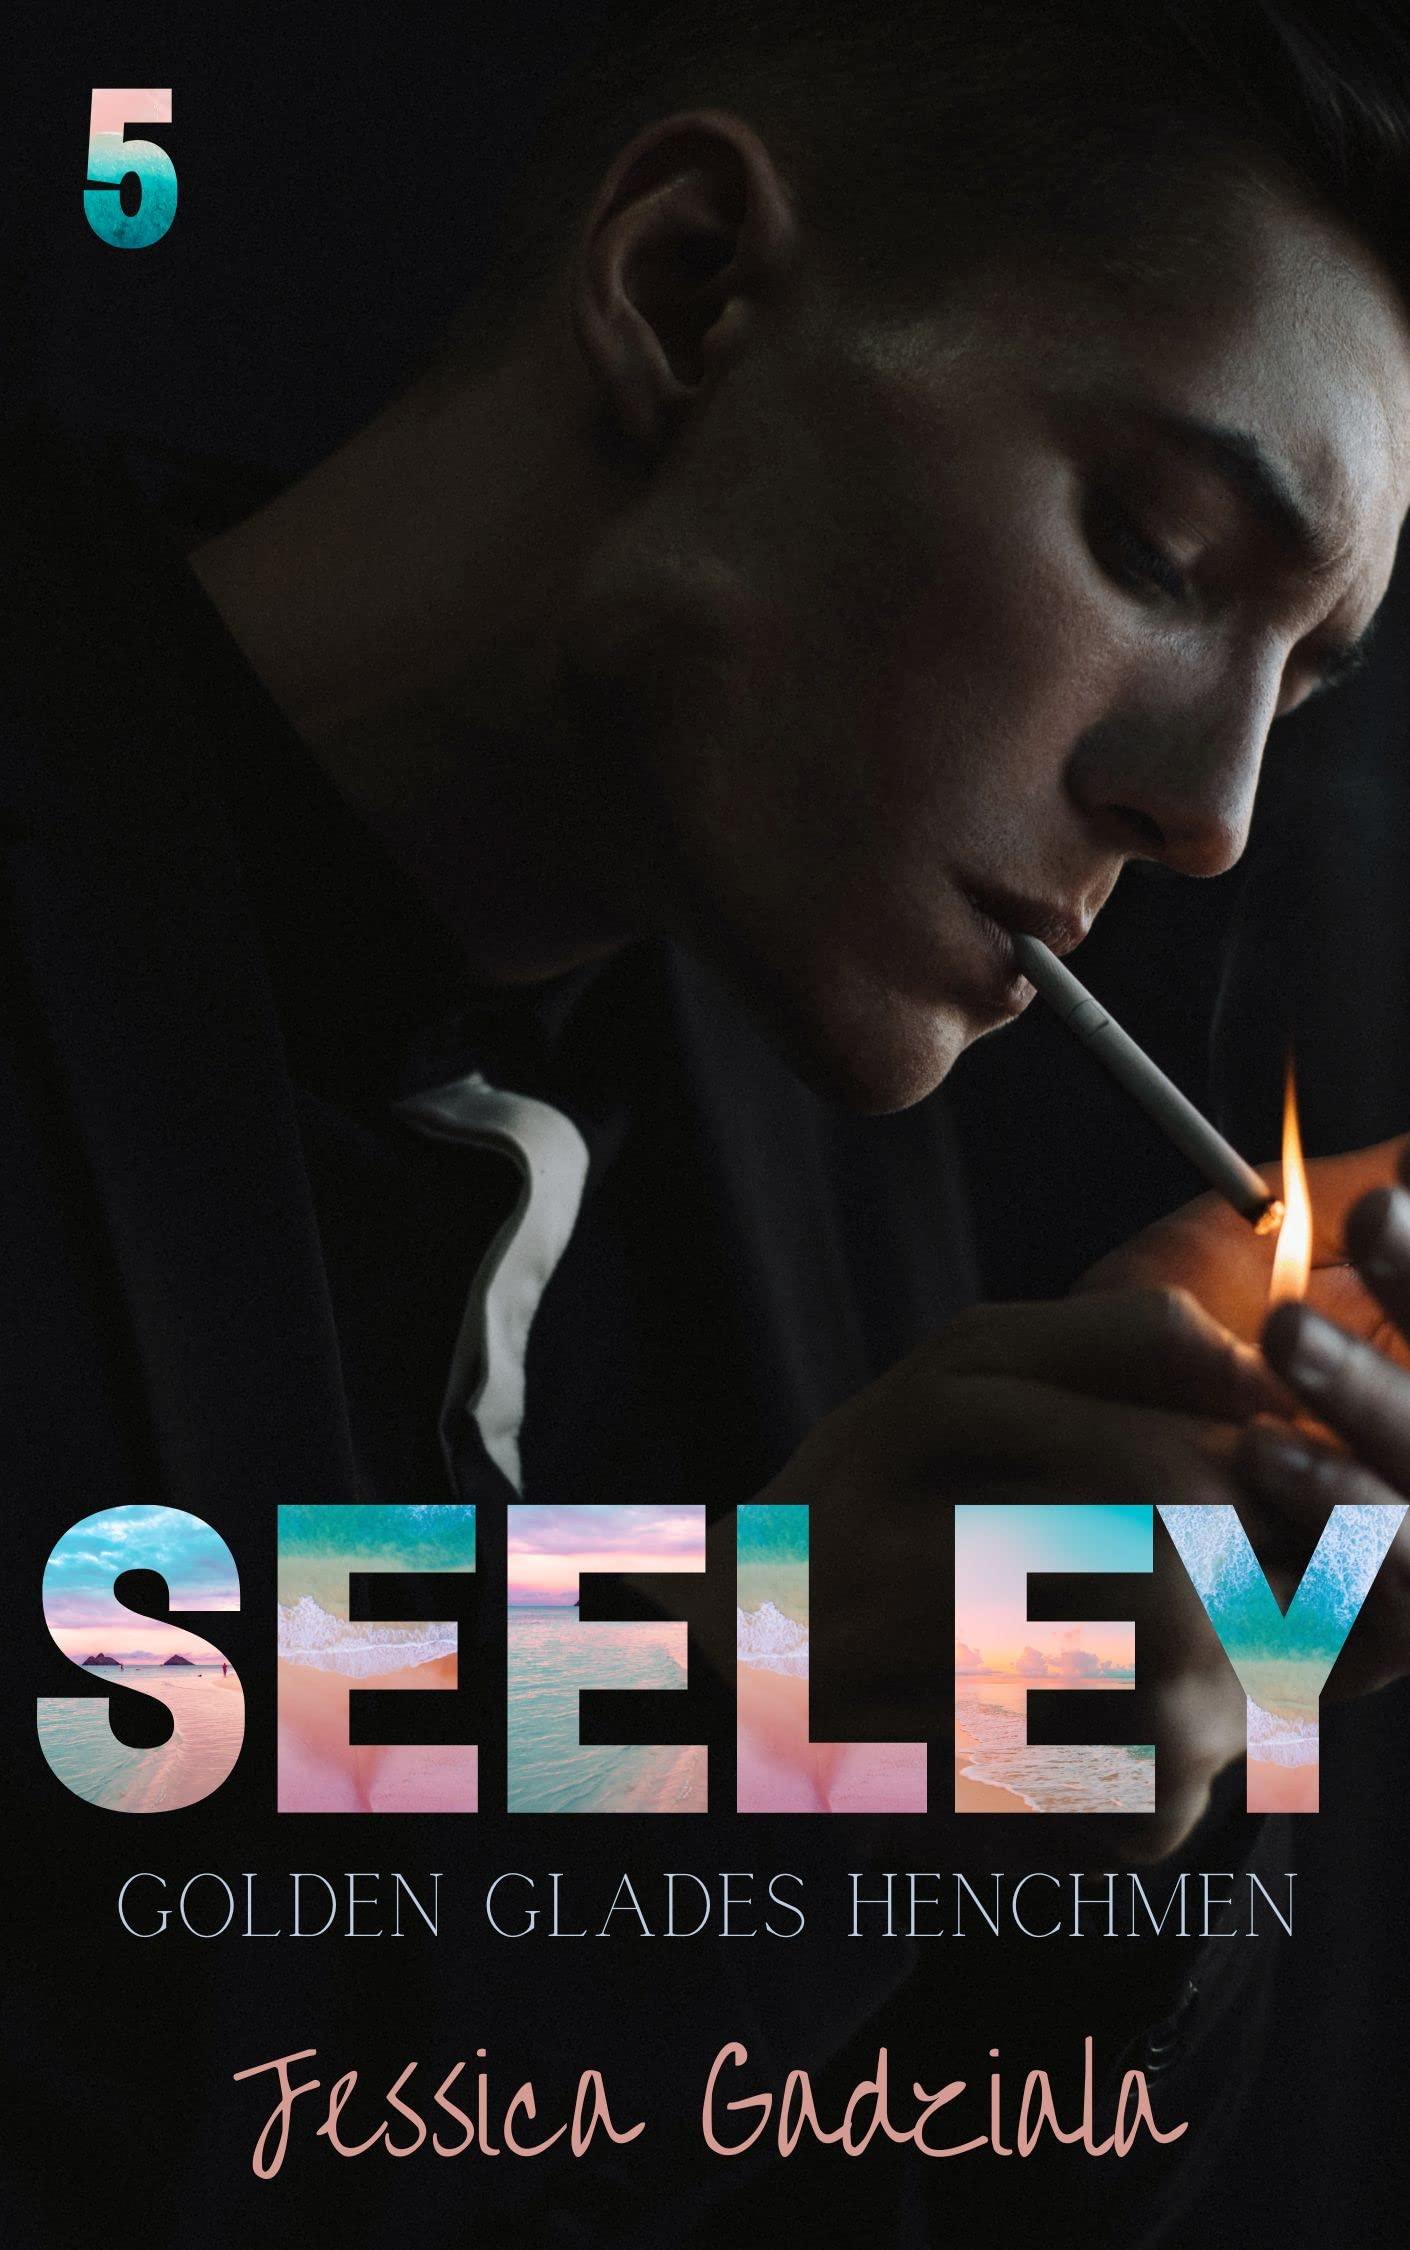 Seeley